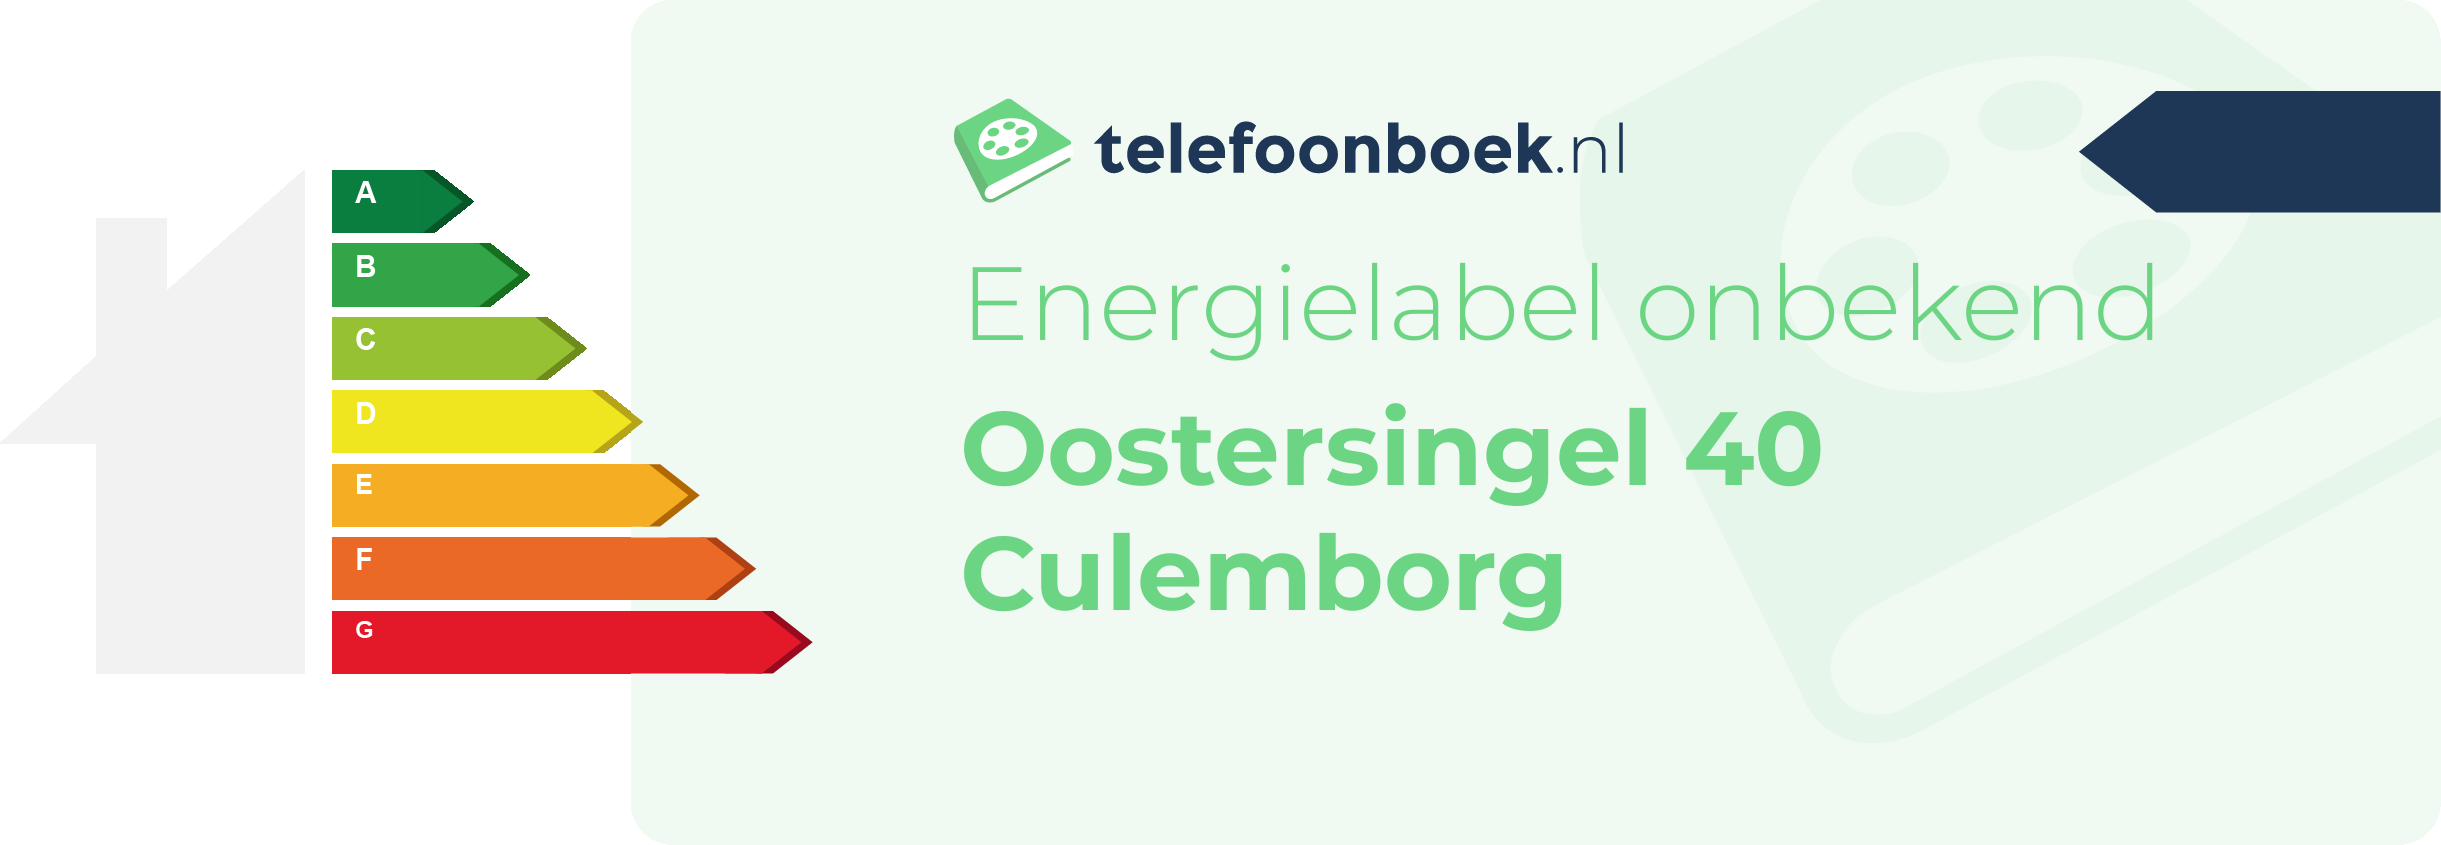 Energielabel Oostersingel 40 Culemborg